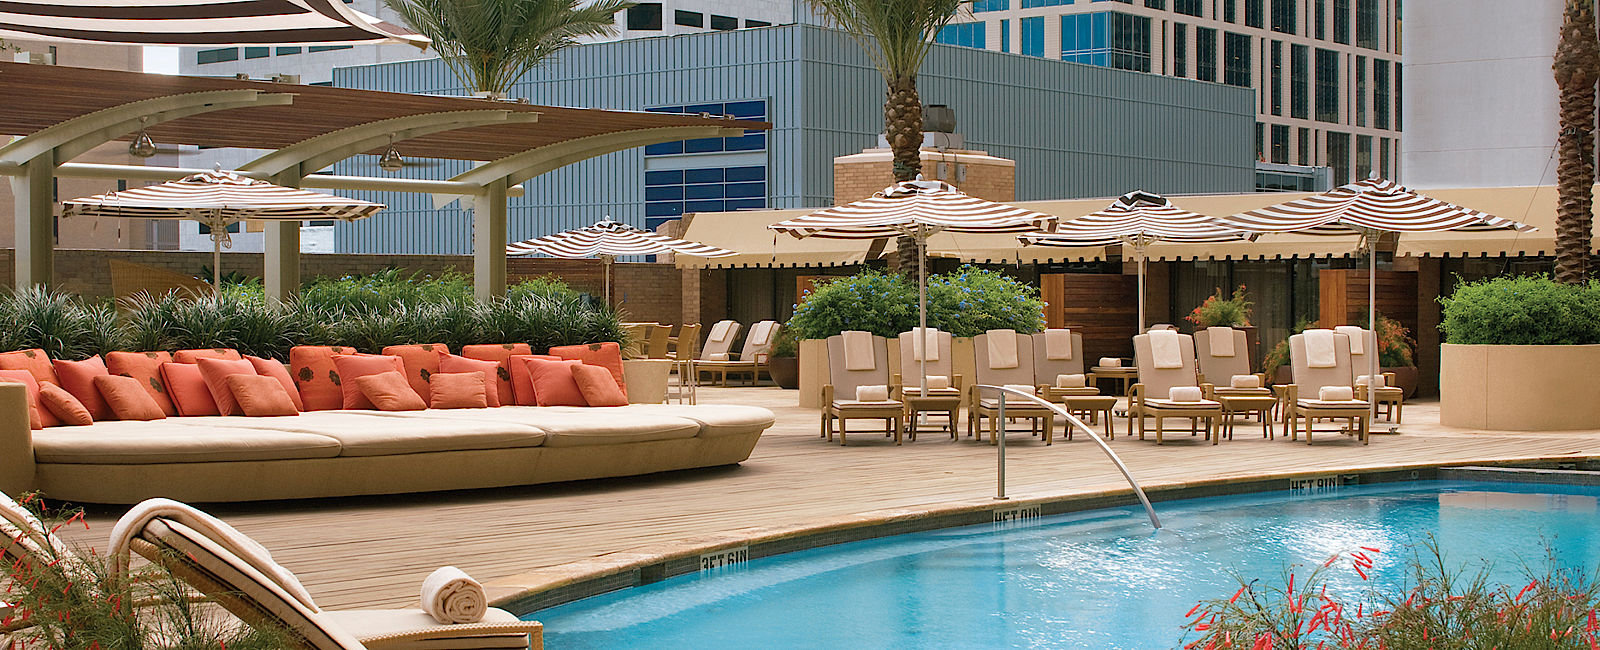 HOTEL TIPPS
 Four Seasons Hotel Houston 
 Elegantes Stadt-Hotel mit zeitgenössischem Design 